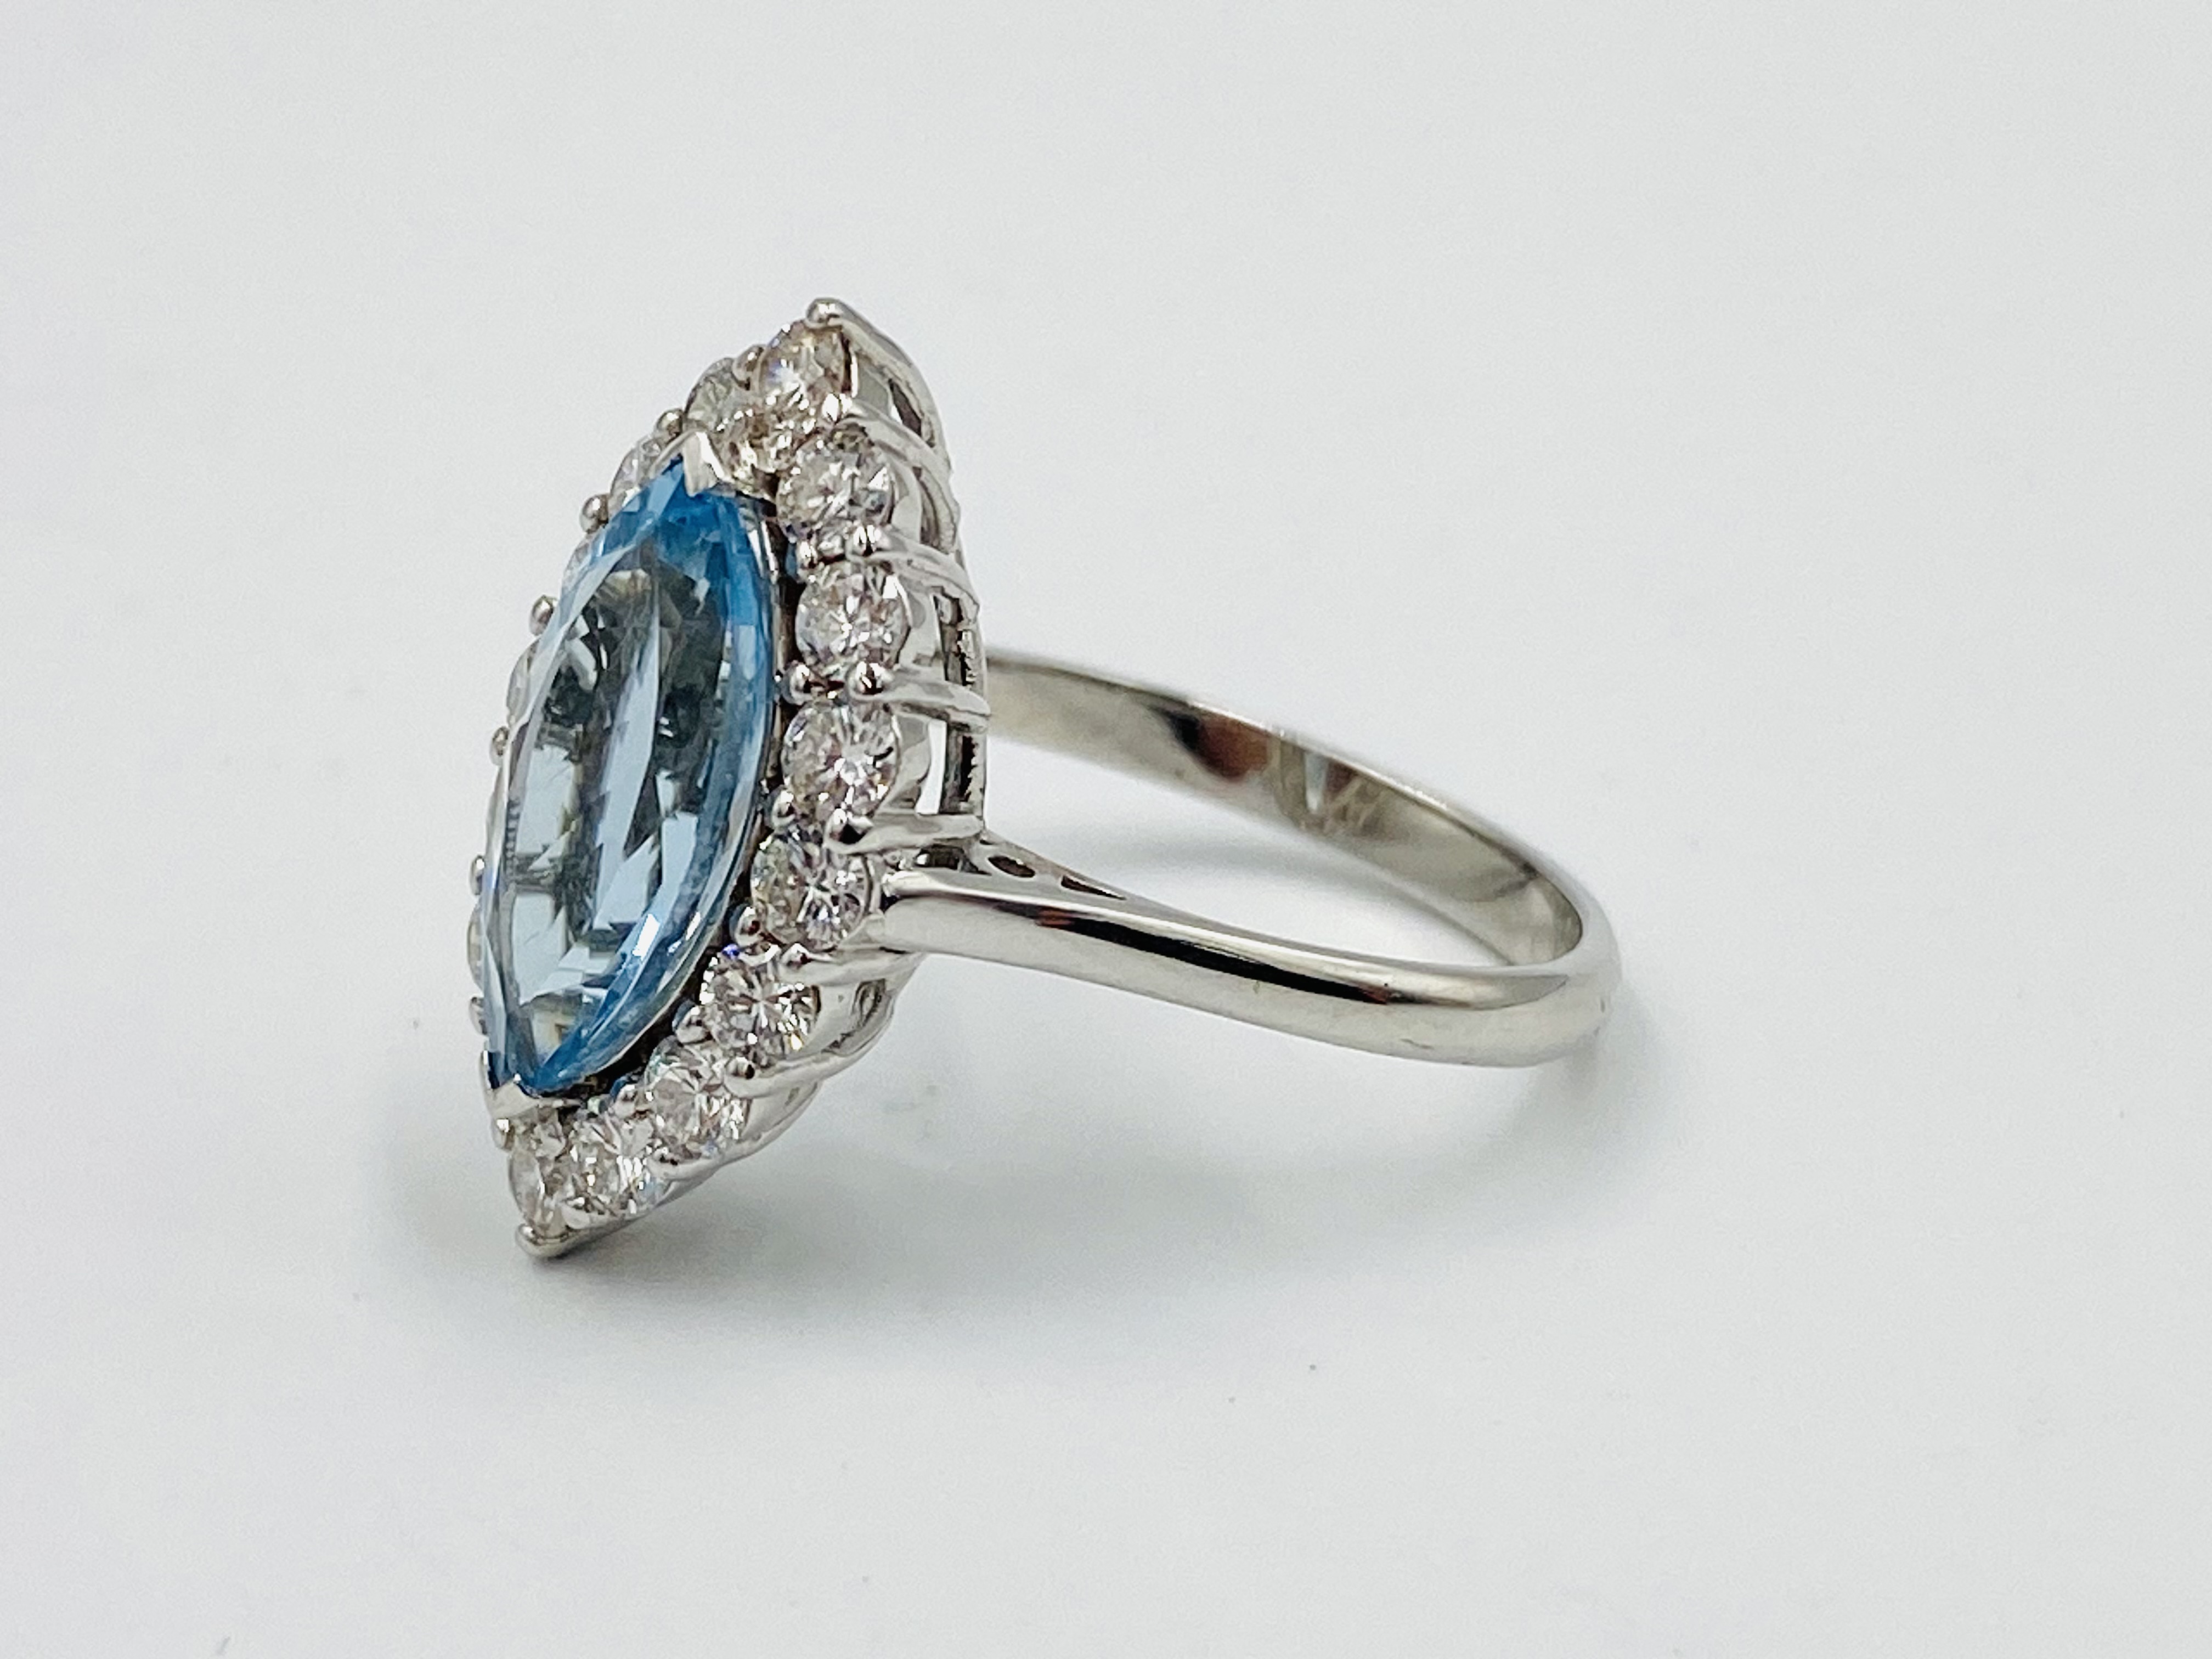 18ct white gold, aquamarine and diamond ring - Image 2 of 5